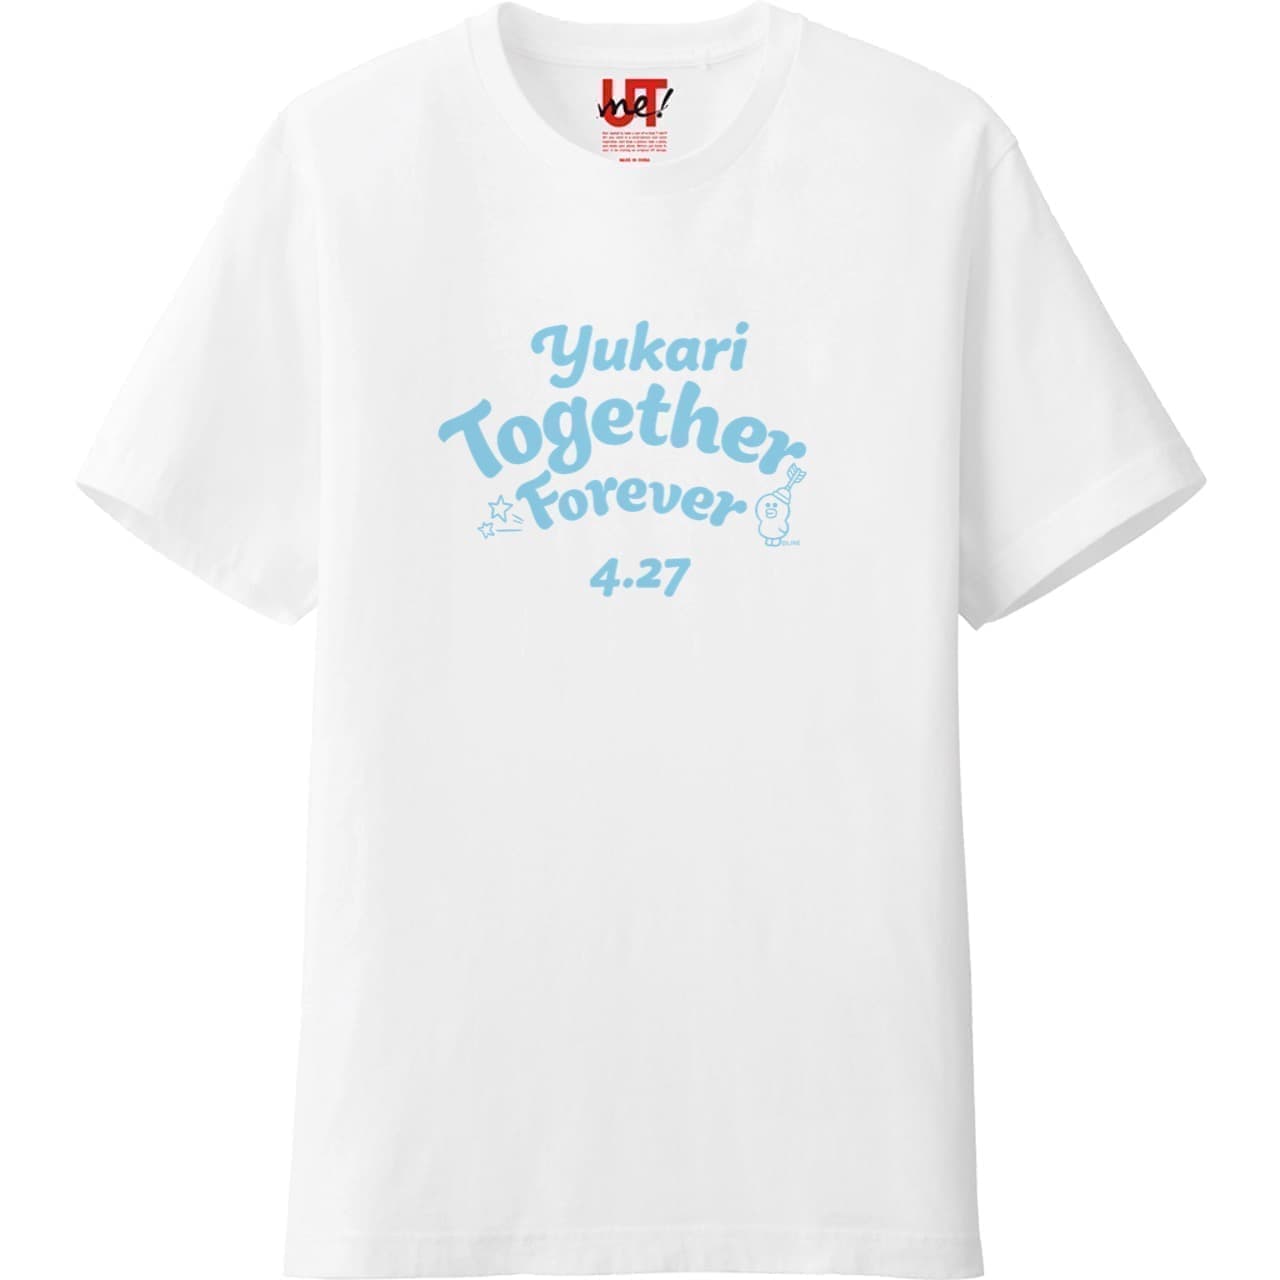 ユニクロ「UTme!」が「LINE FRIENDS」とコラボ -- メッセージ入りオリジナルTシャツを簡単に作成